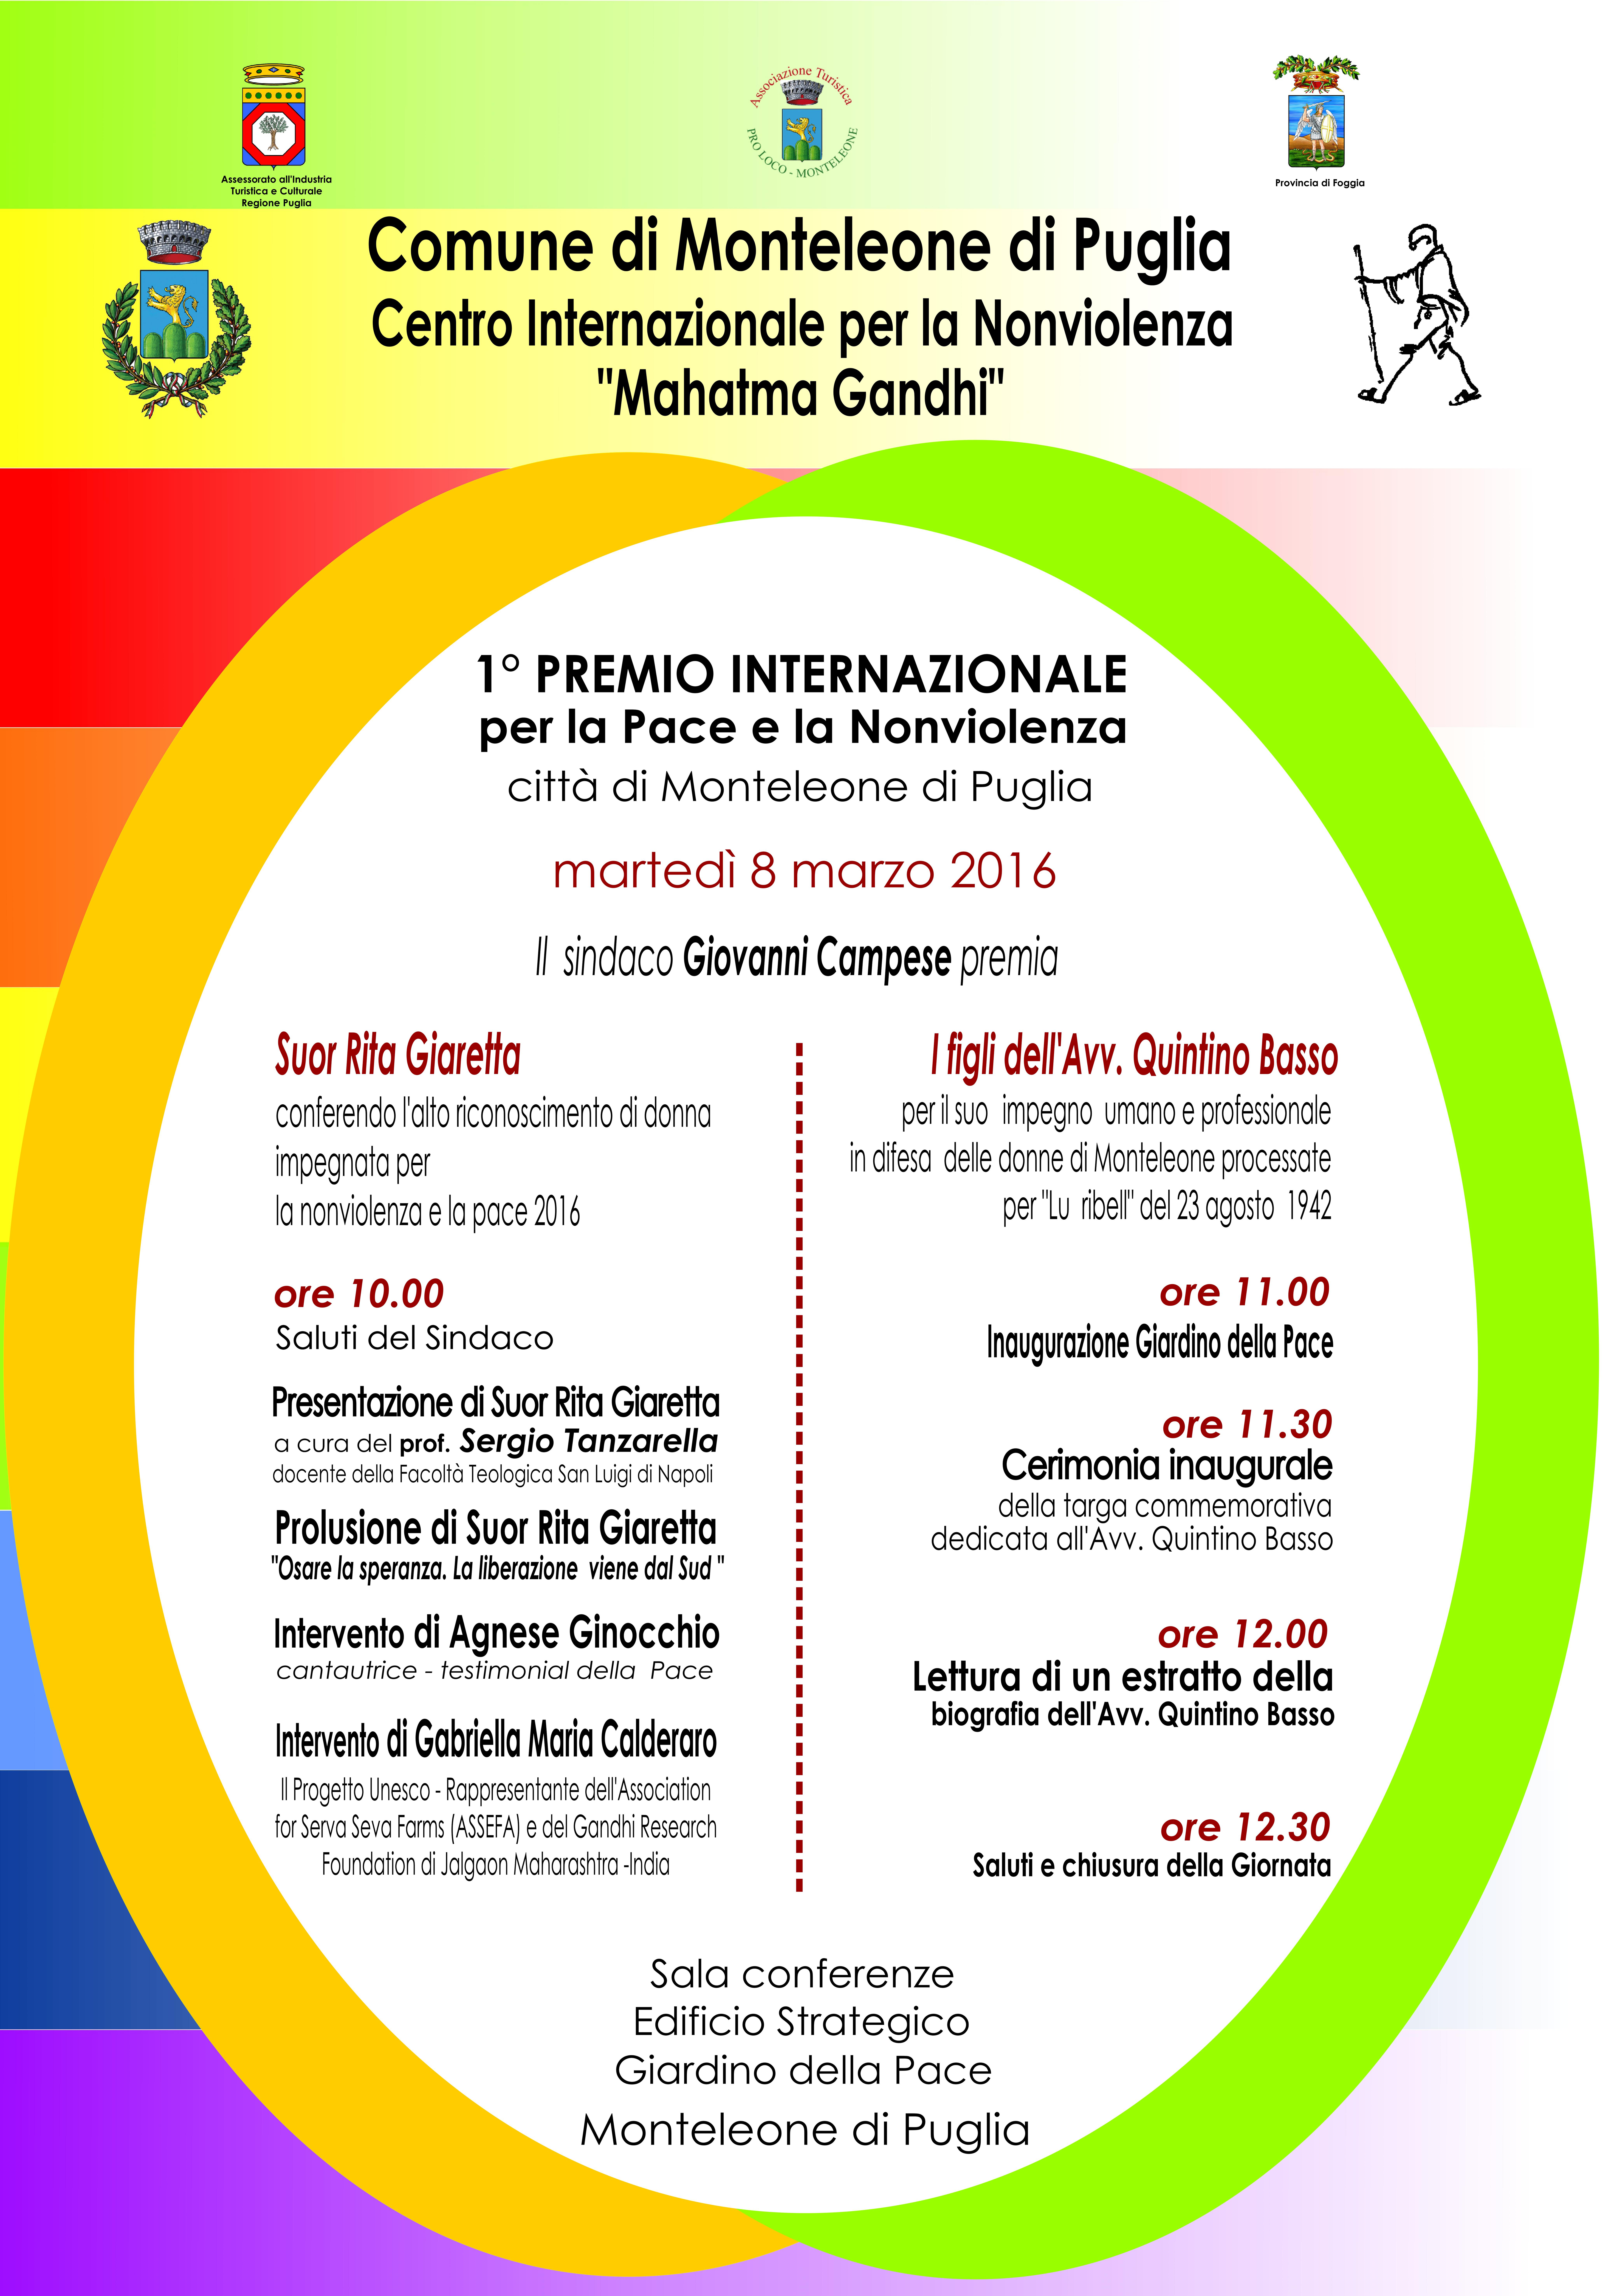 Monteleone di Puglia; 1° PREMIO INTERNAZIONALE PER LA PACE E NONVIOLENZA – 8 Marzo